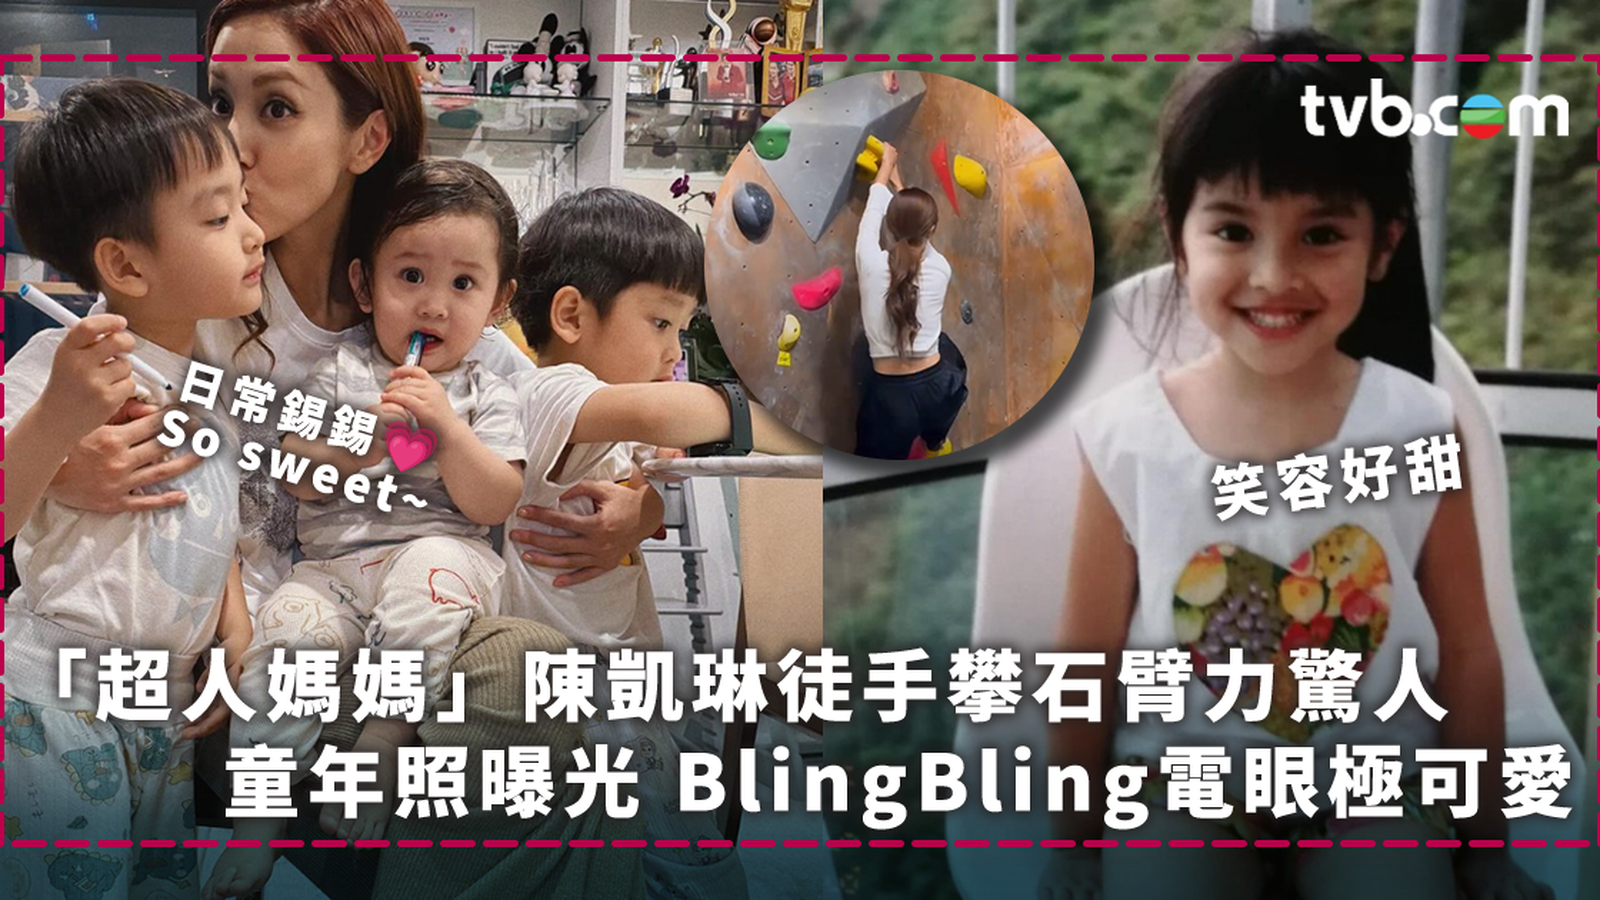 「超人媽媽」陳凱琳徒手攀石臂力驚人 童年照曝光BlingBling電眼極可愛